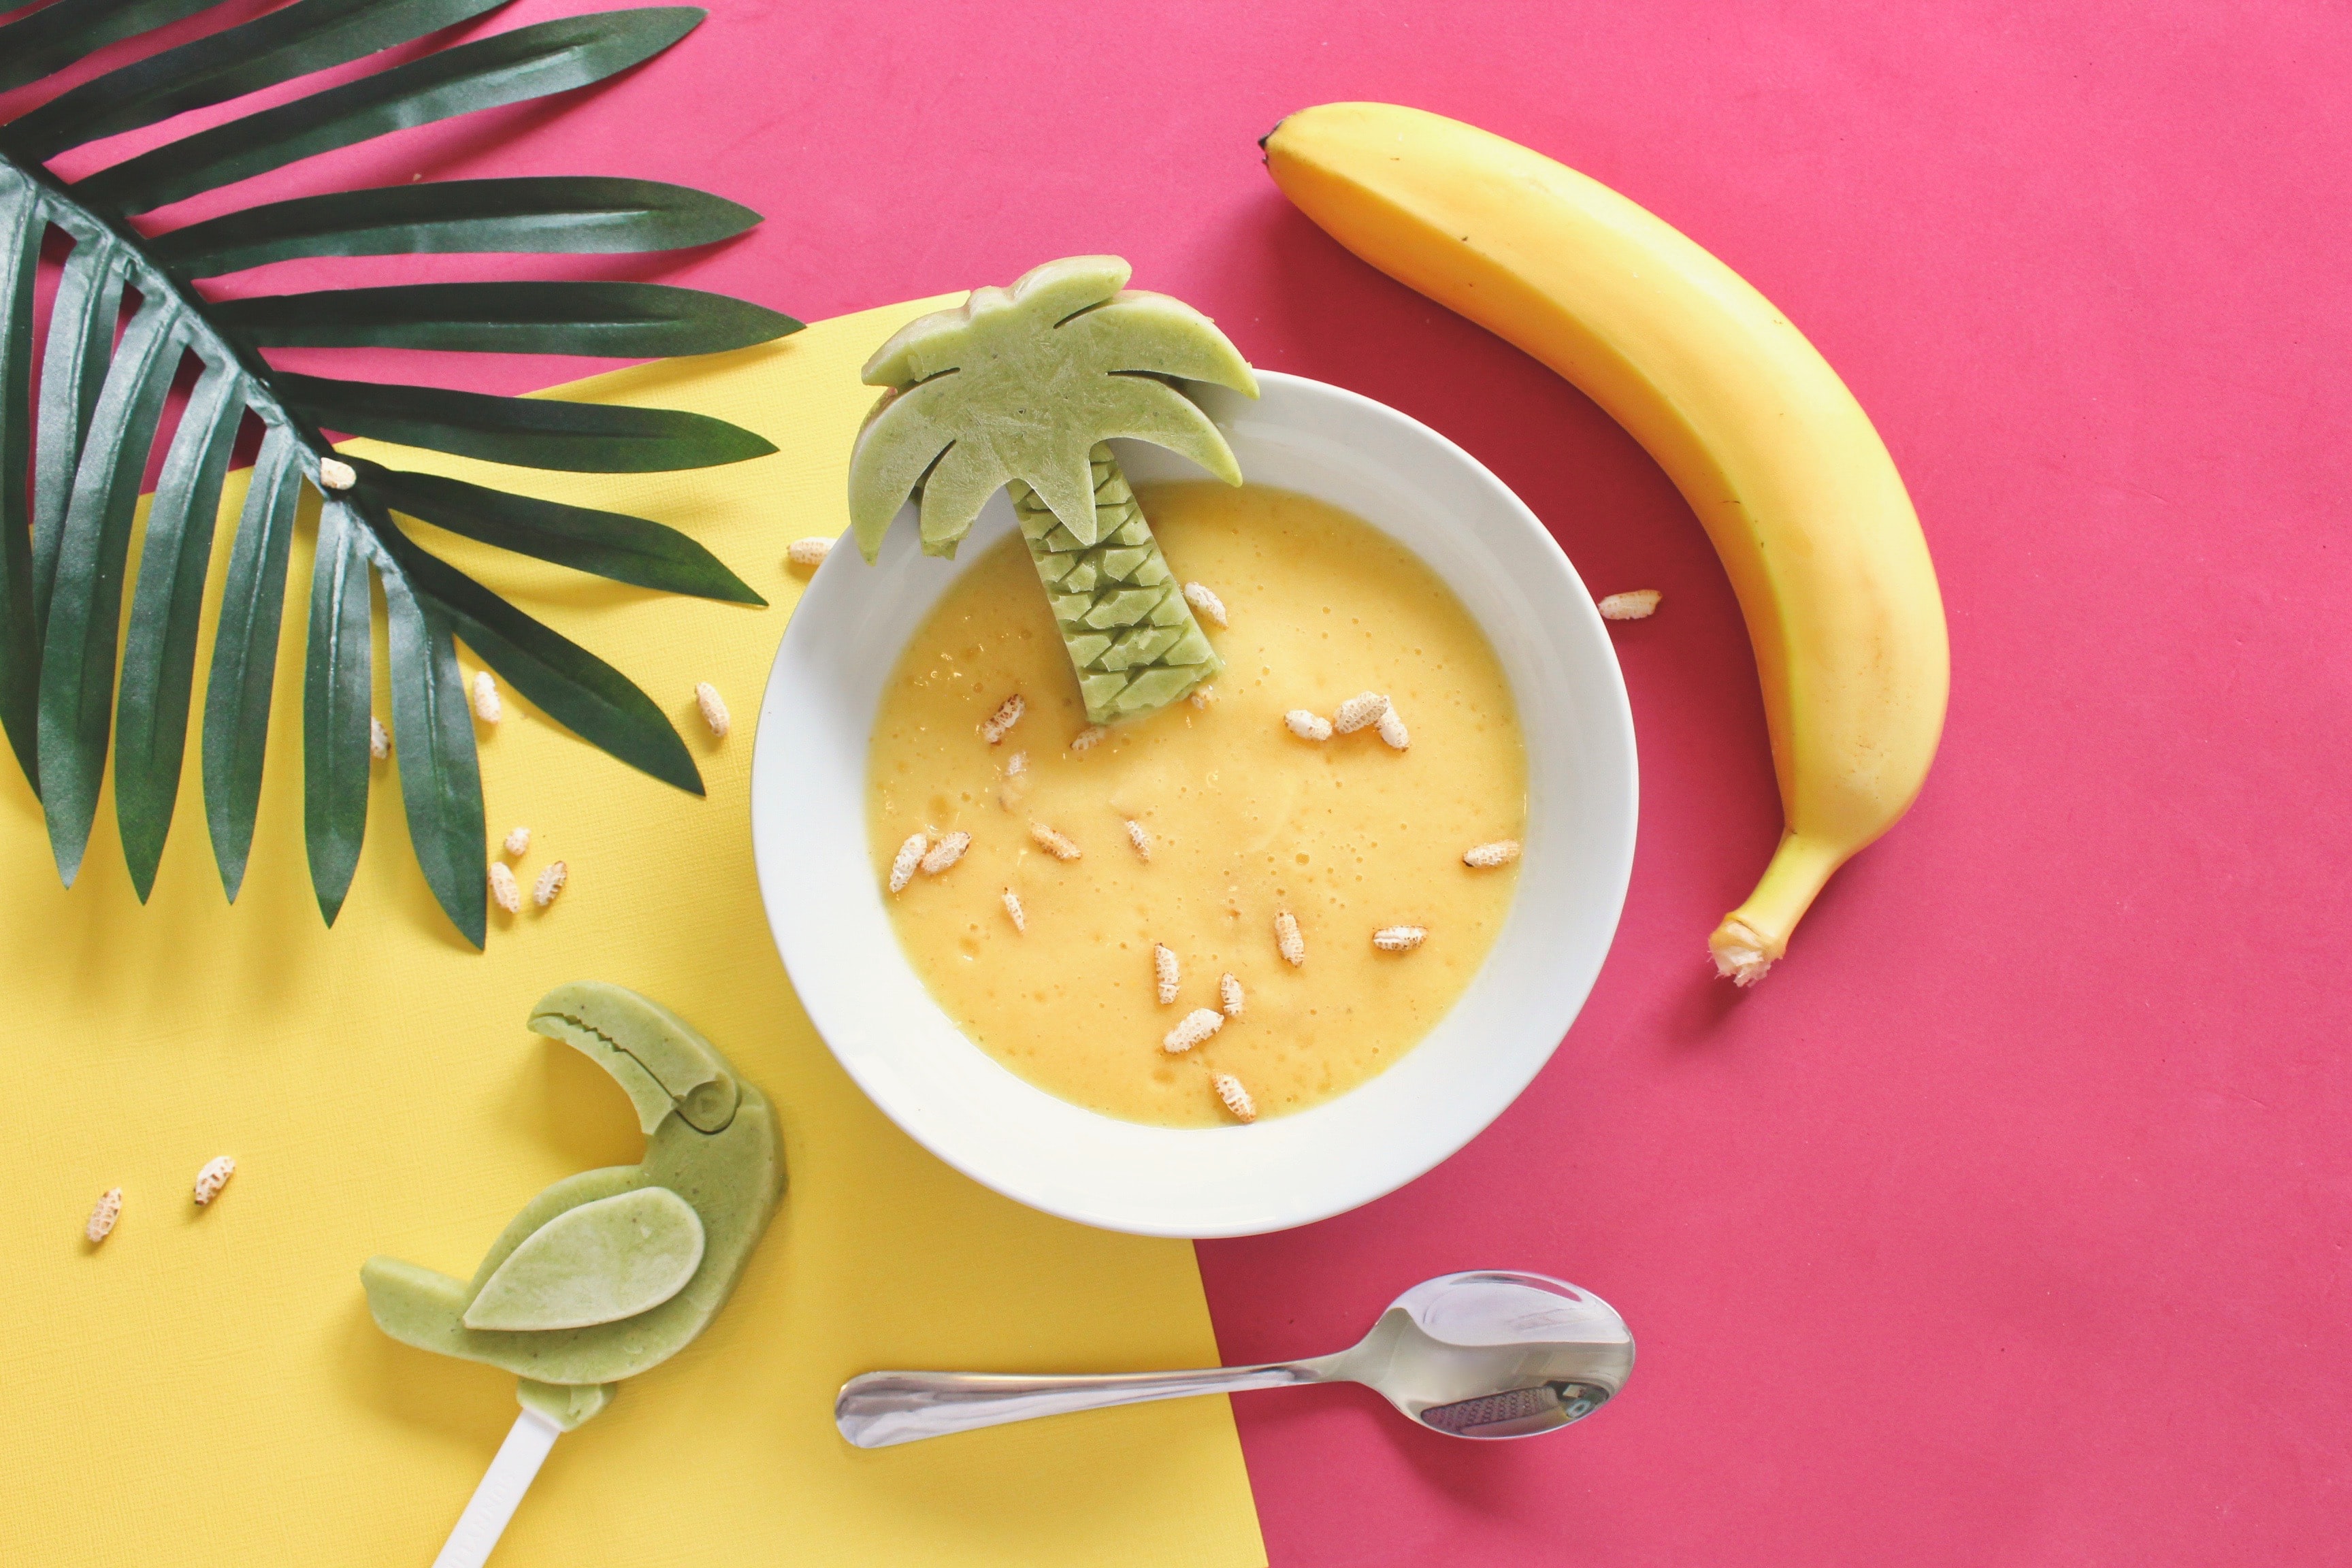 4 συνταγές με μπανάνα που θα αλλάξουν τον τρόπο που βλέπεις το σνακ στο γραφείο ή το σχολείο